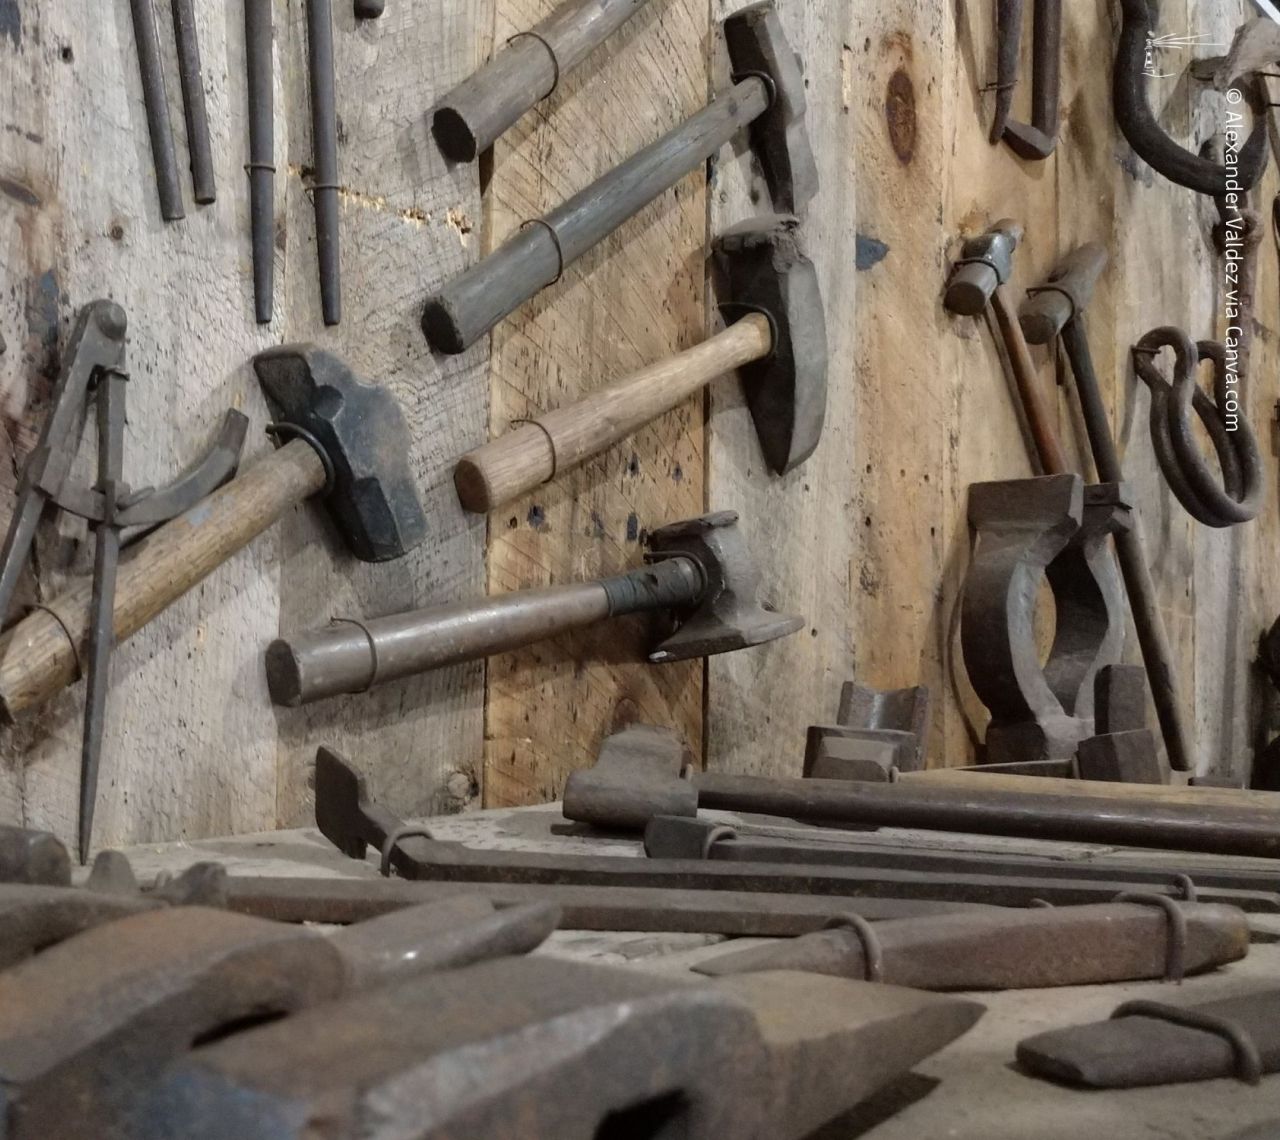 Holzwand mit sorgfältig angeordnetem Werkzeug